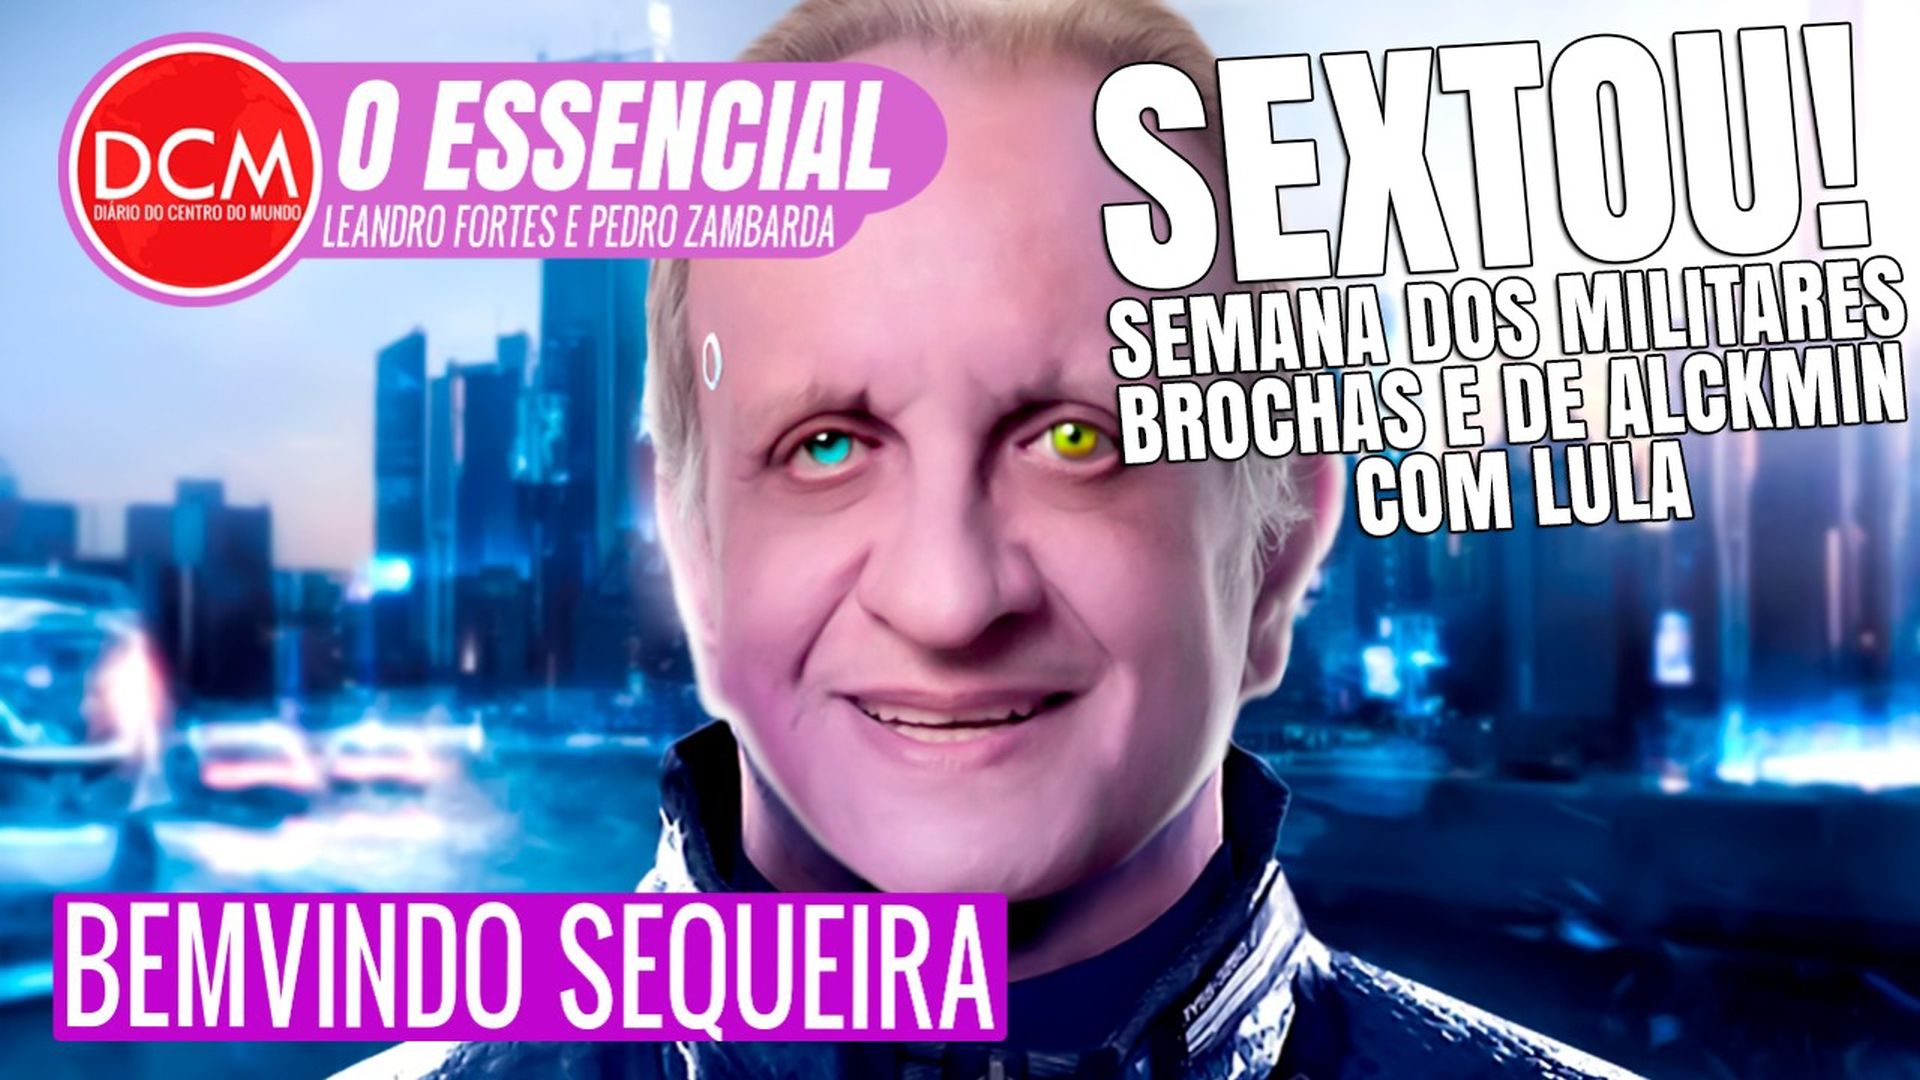 Essencial do DCM: SEXTOU! COM BEMVINDO SEQUEIRA